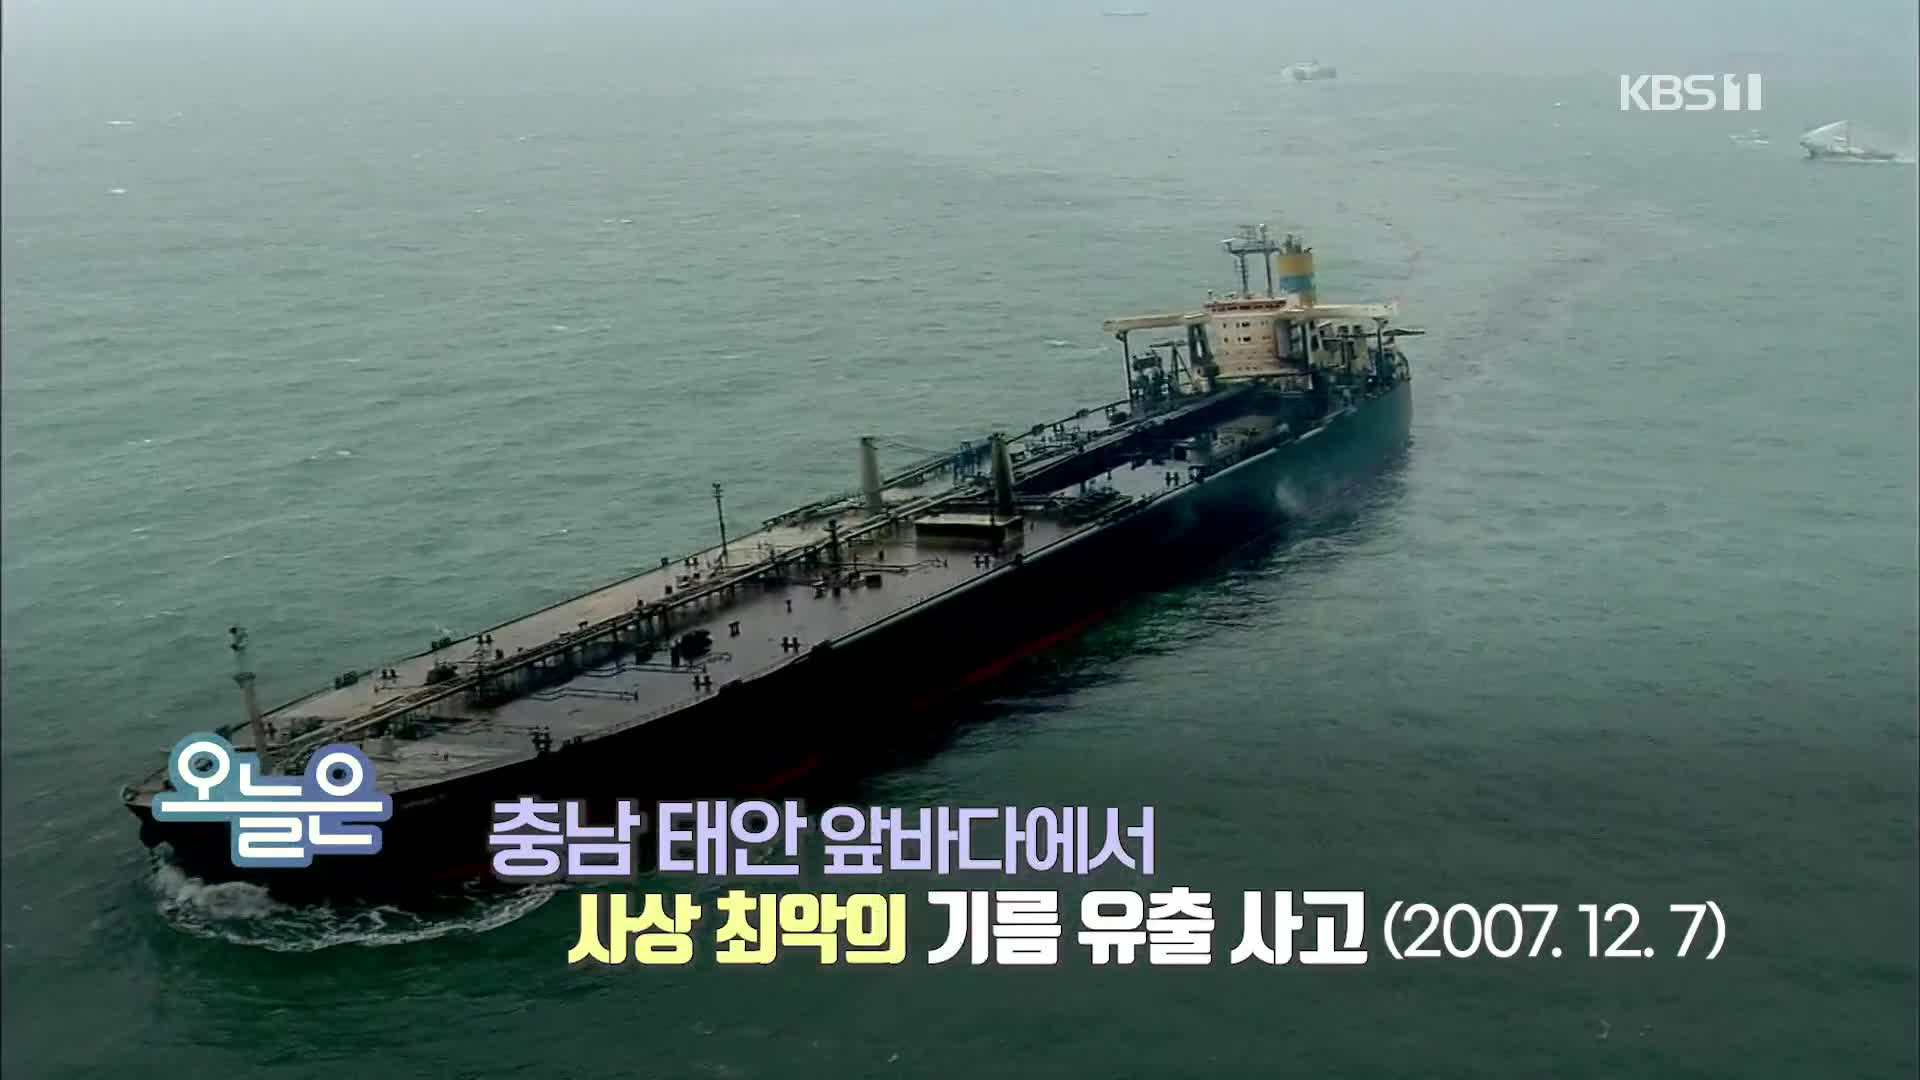 [오늘은] 충남 태안 앞바다에서 사상 최악의 기름 유출 사고 (2007.12.7)